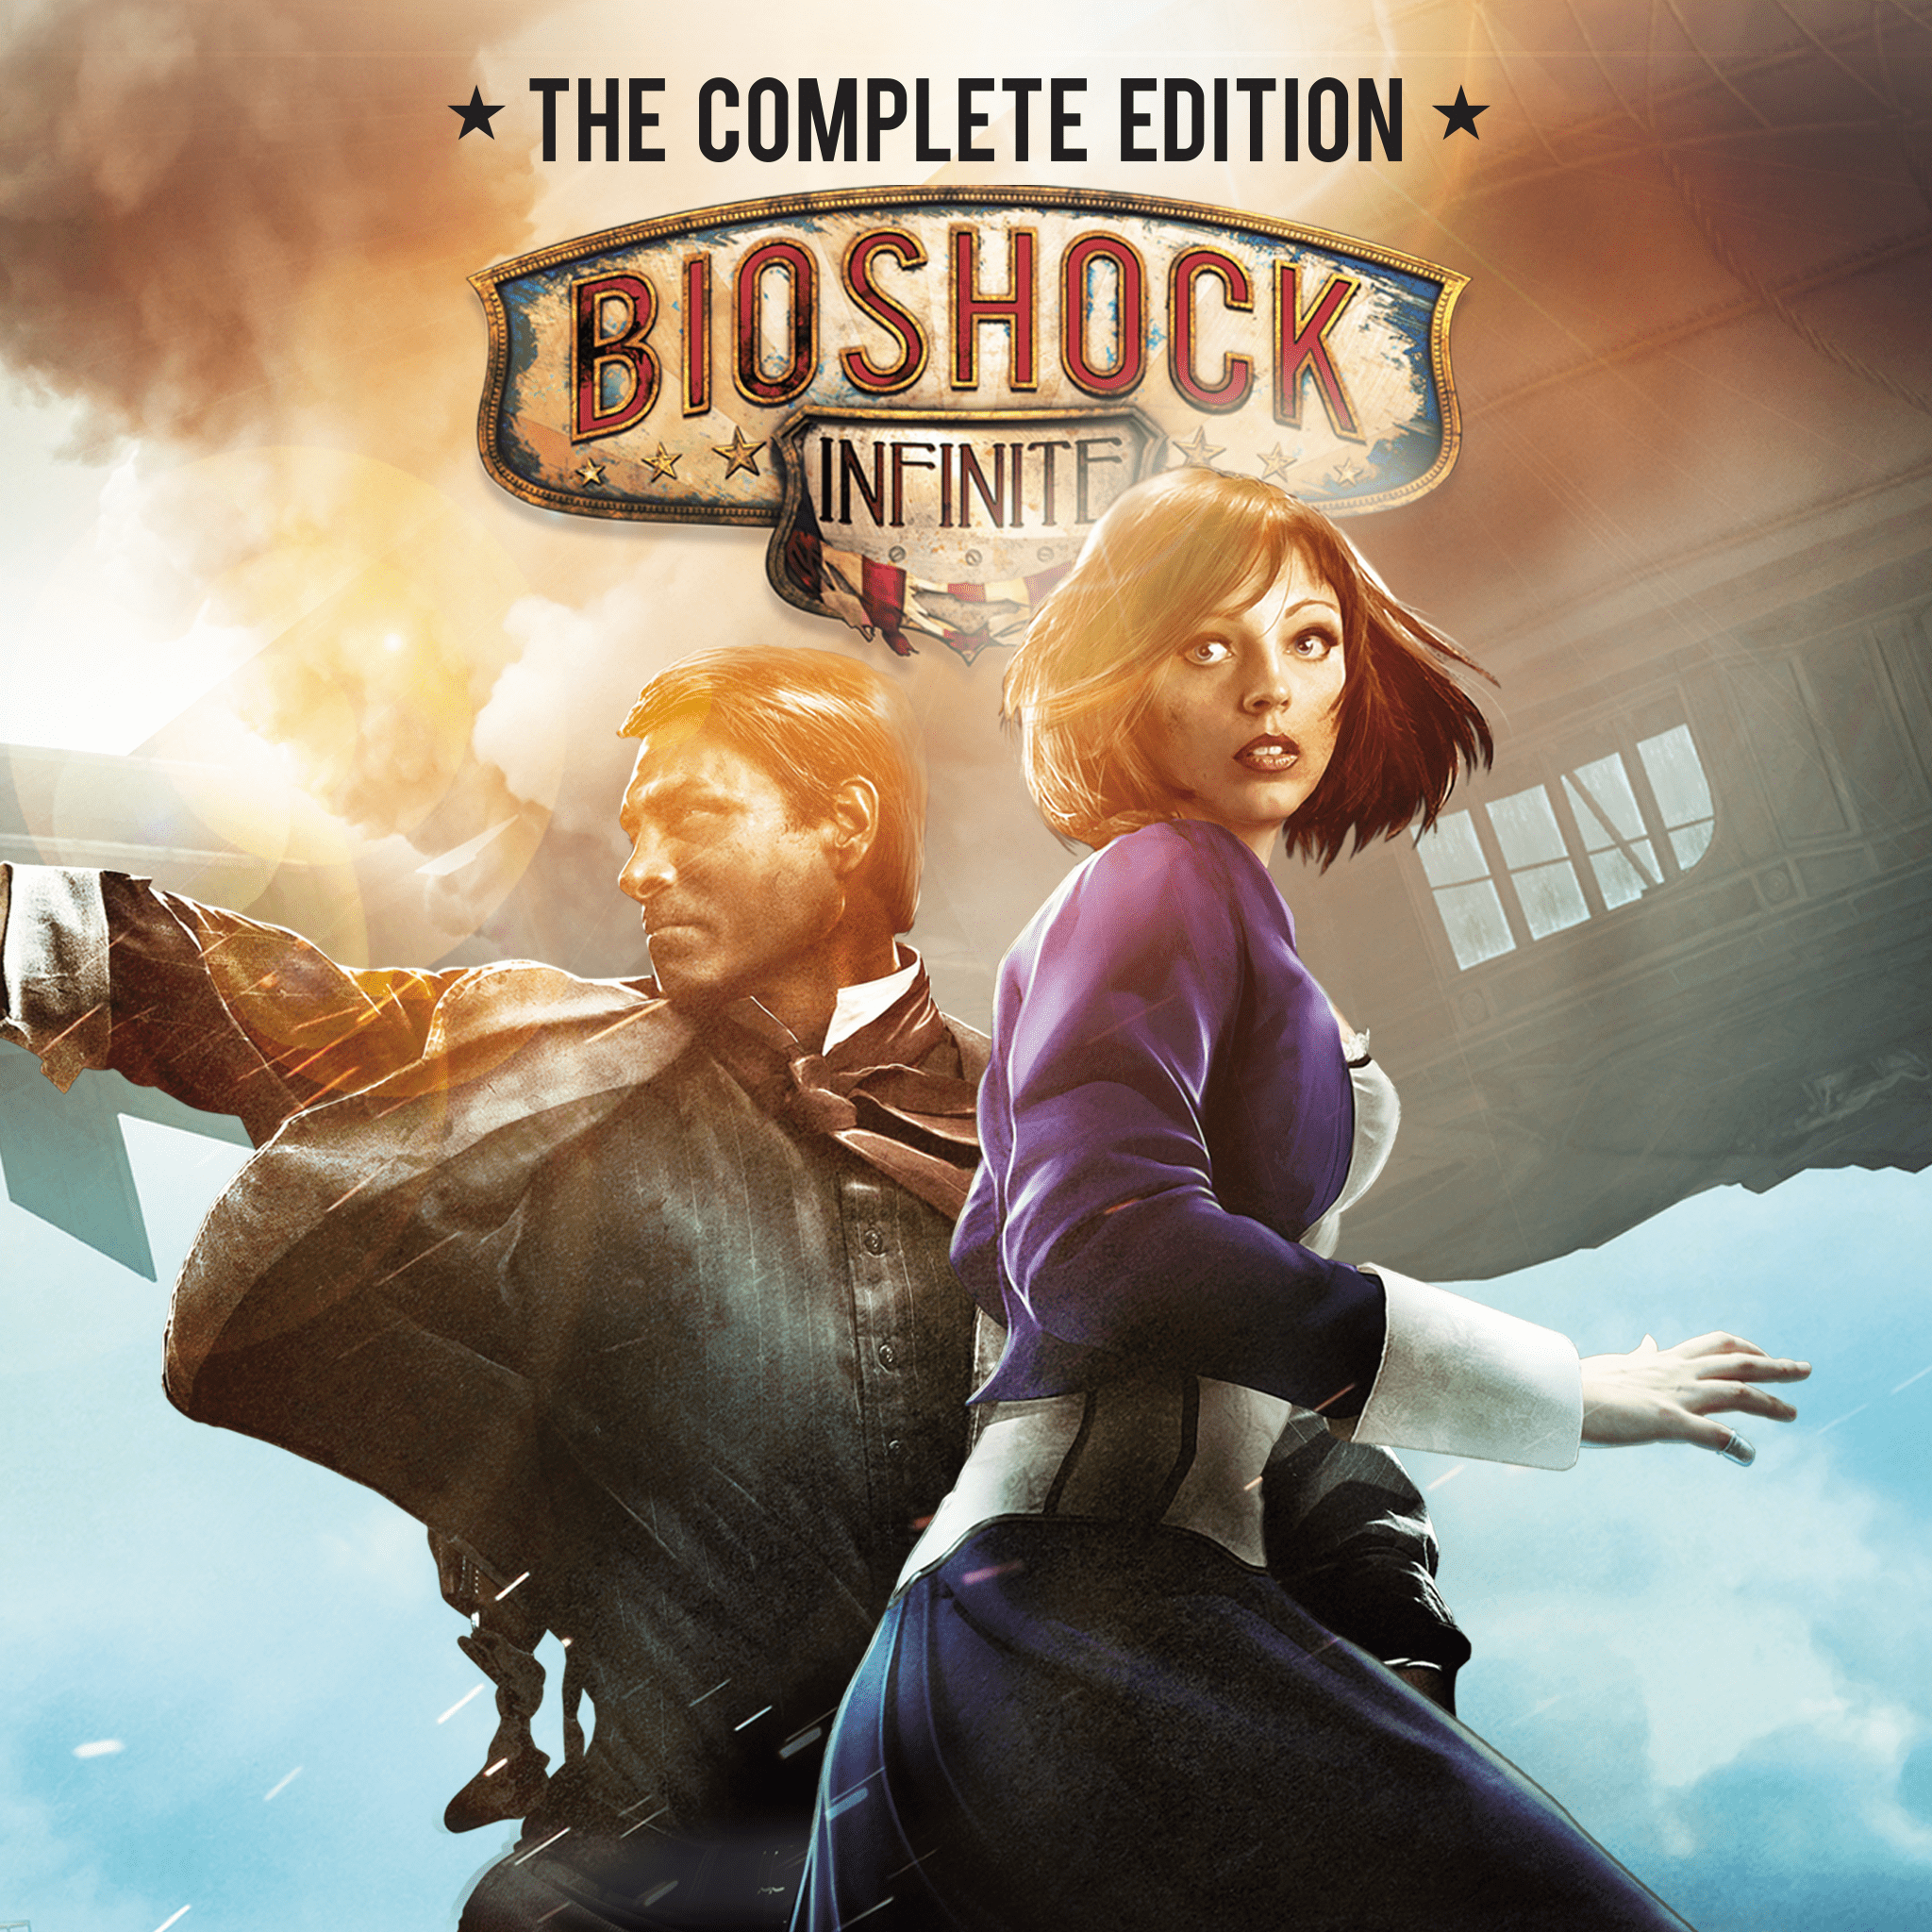 BioShock Infinite (Video Game 2013) - IMDb